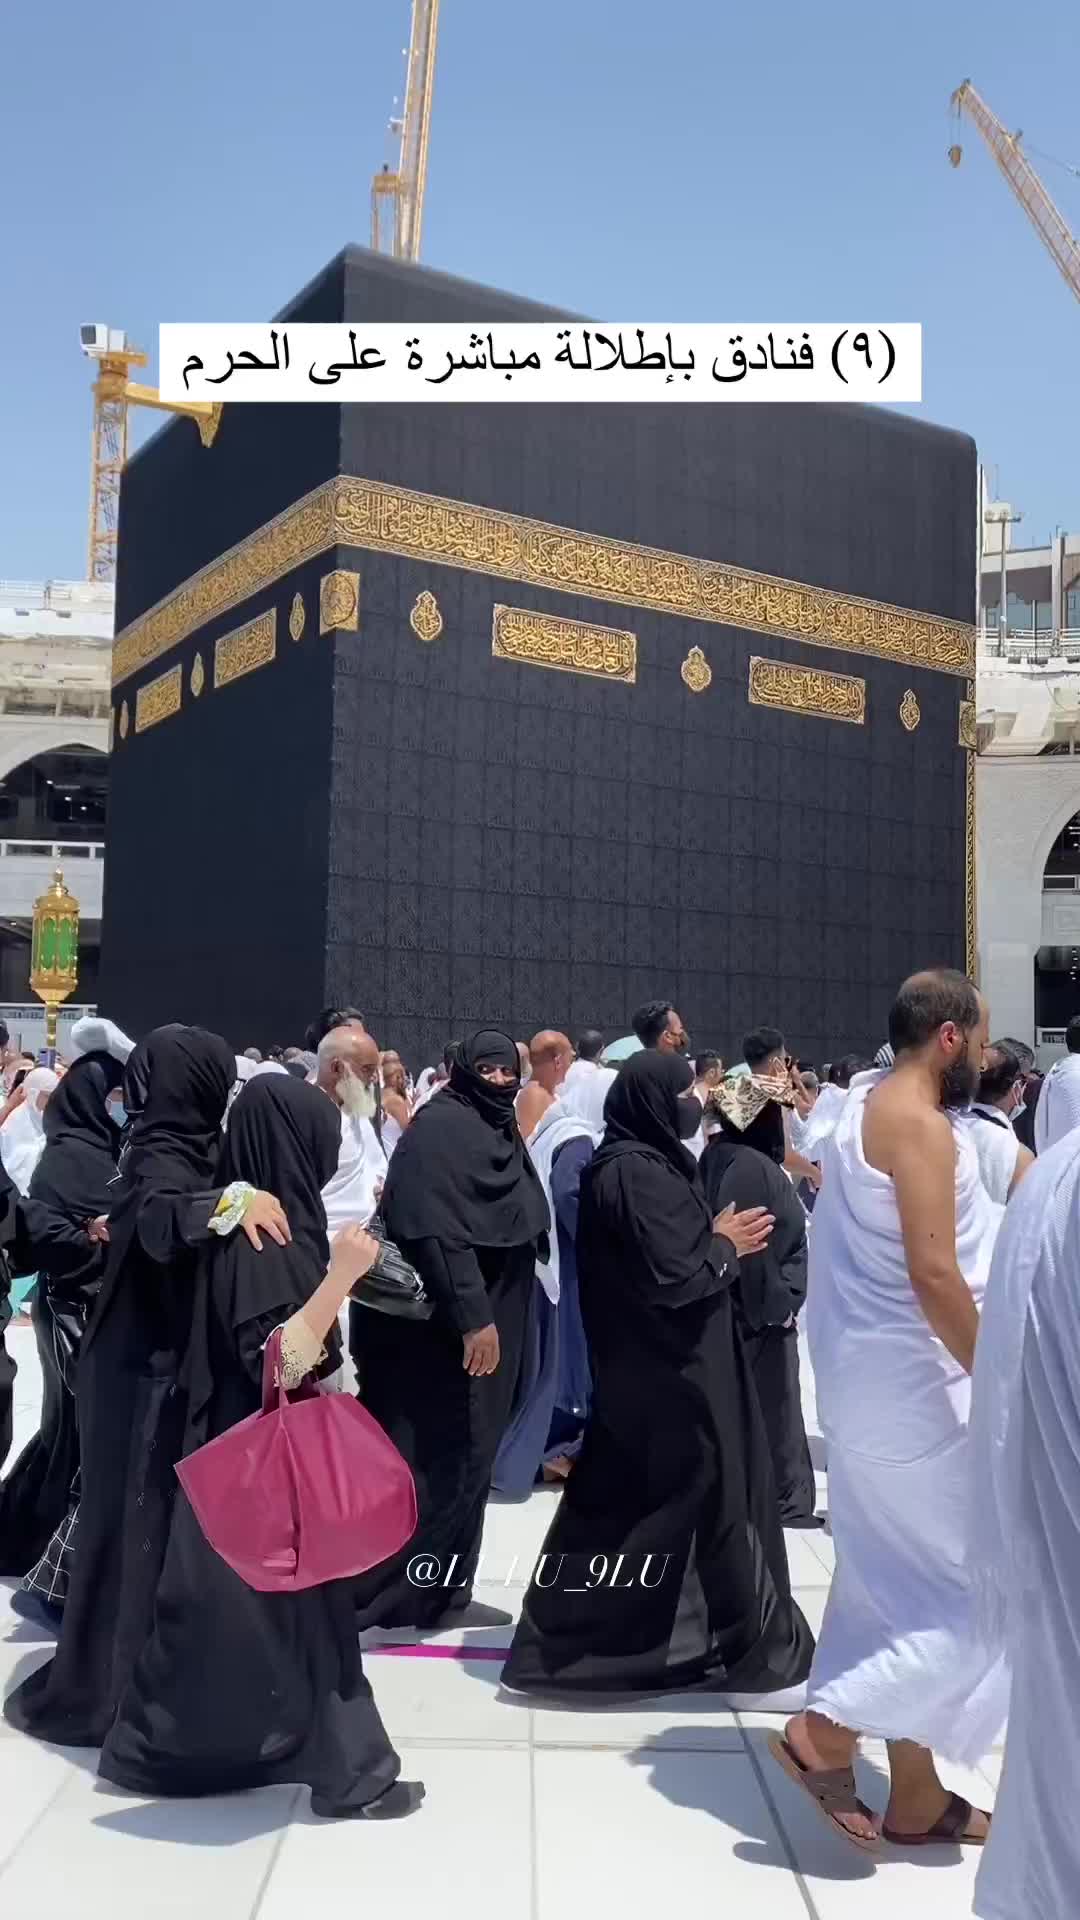 Best Hotels Near Haram for Pilgrims in Mecca